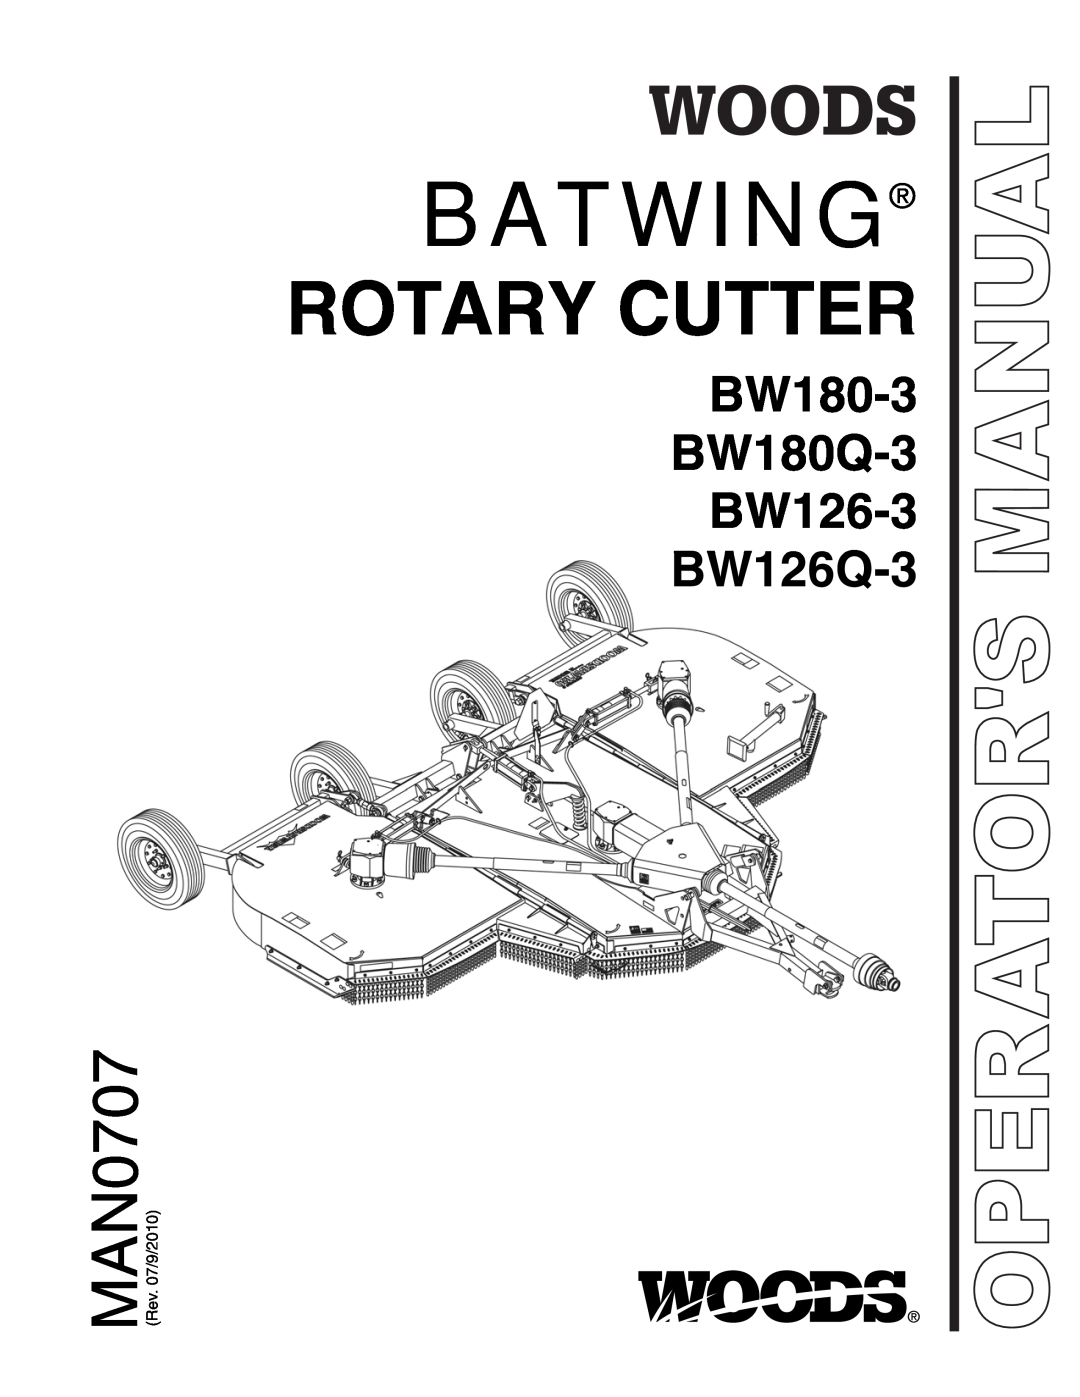 Woods Equipment manual Batwing, Rotary Cutter, BW180-3 BW180Q-3 BW126-3 BW126Q-3, Operators Manual 